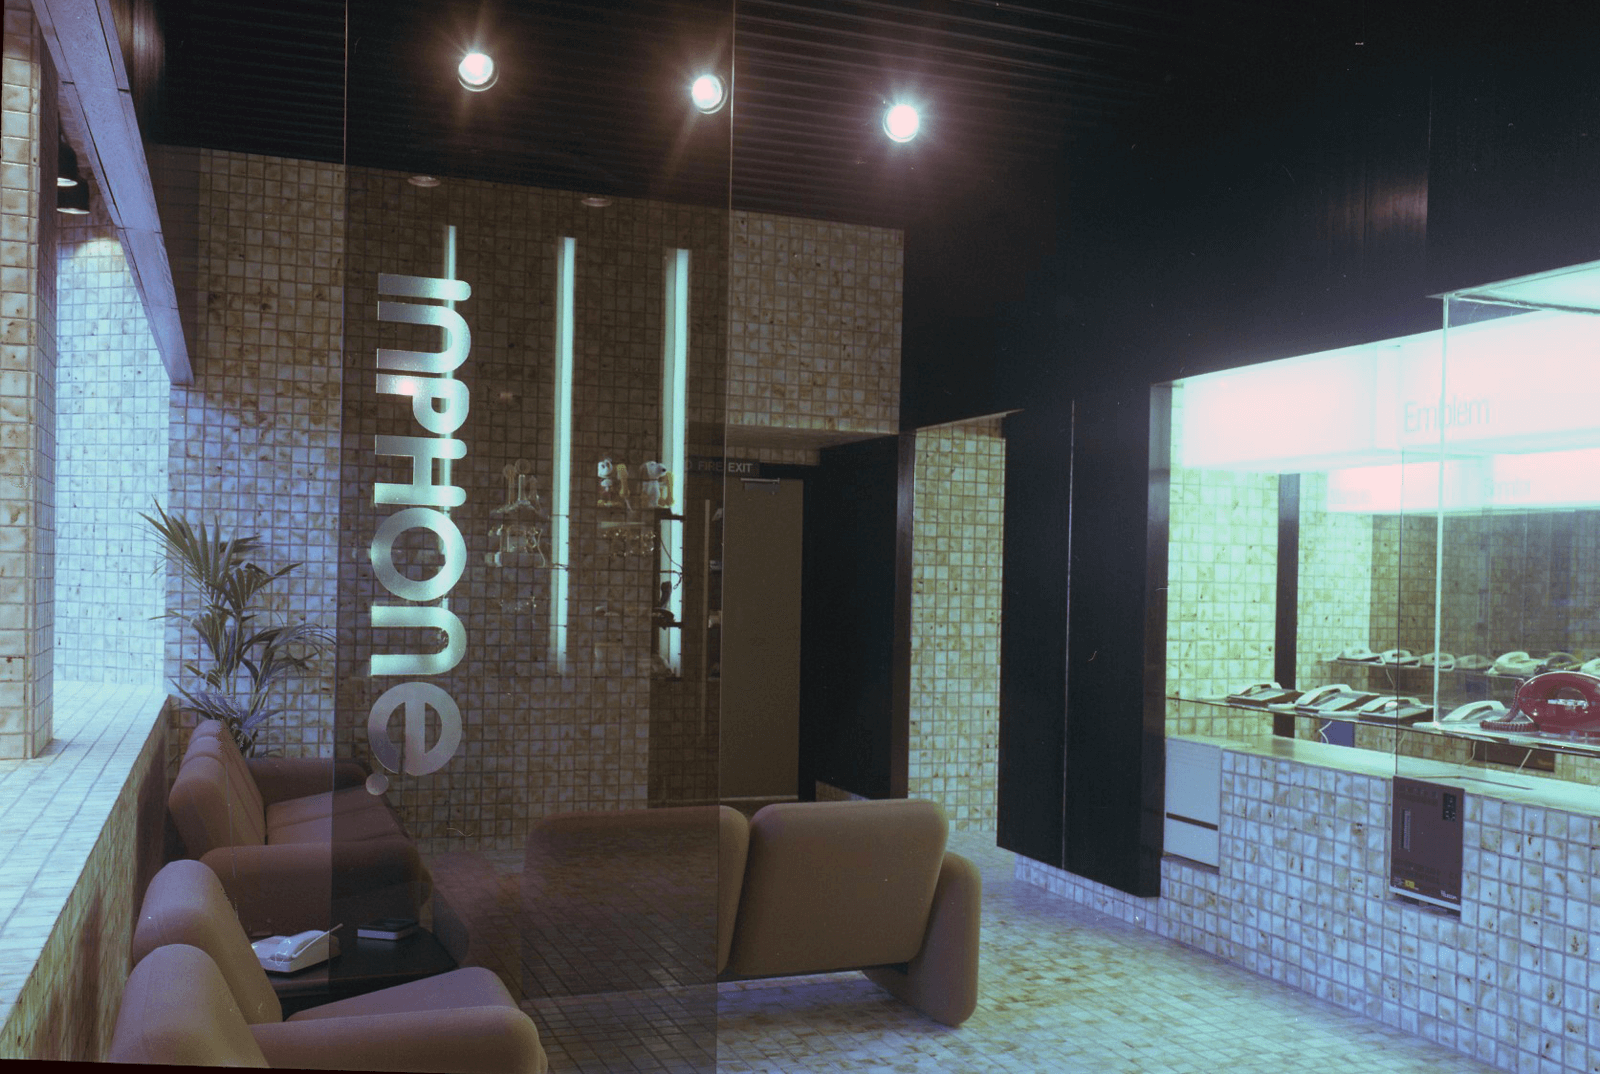 Interior showroom design